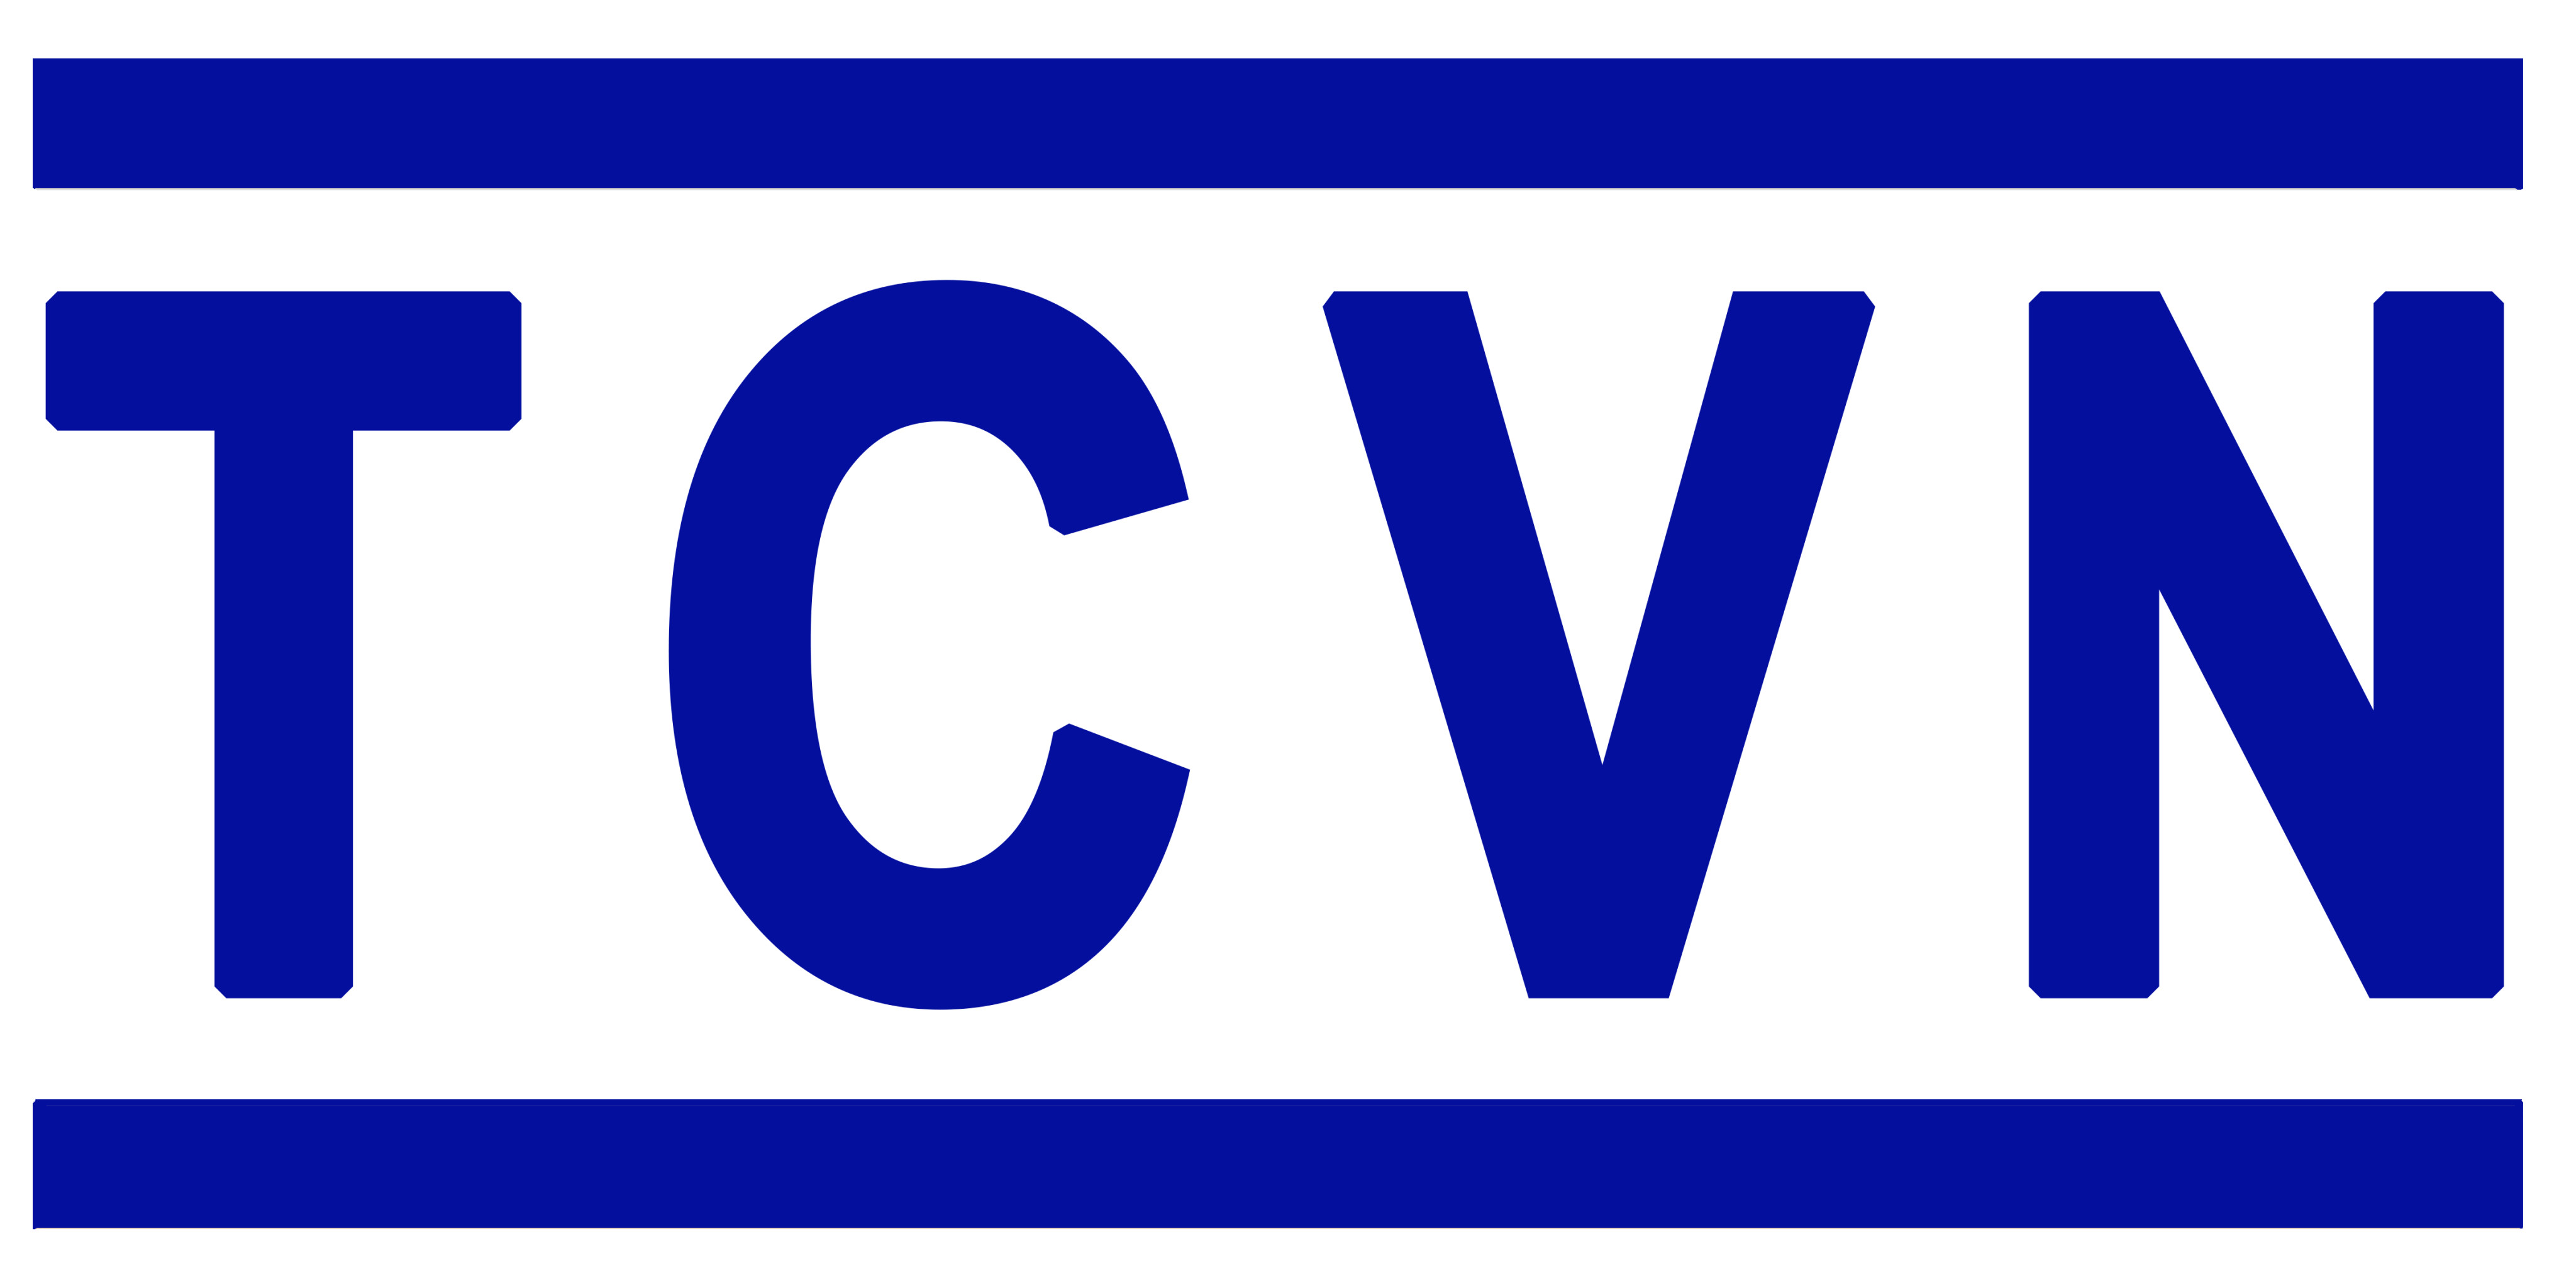 Danh mục tiêu chuẩn Quốc Gia (TCVN) công bố tháng 11 năm 2020